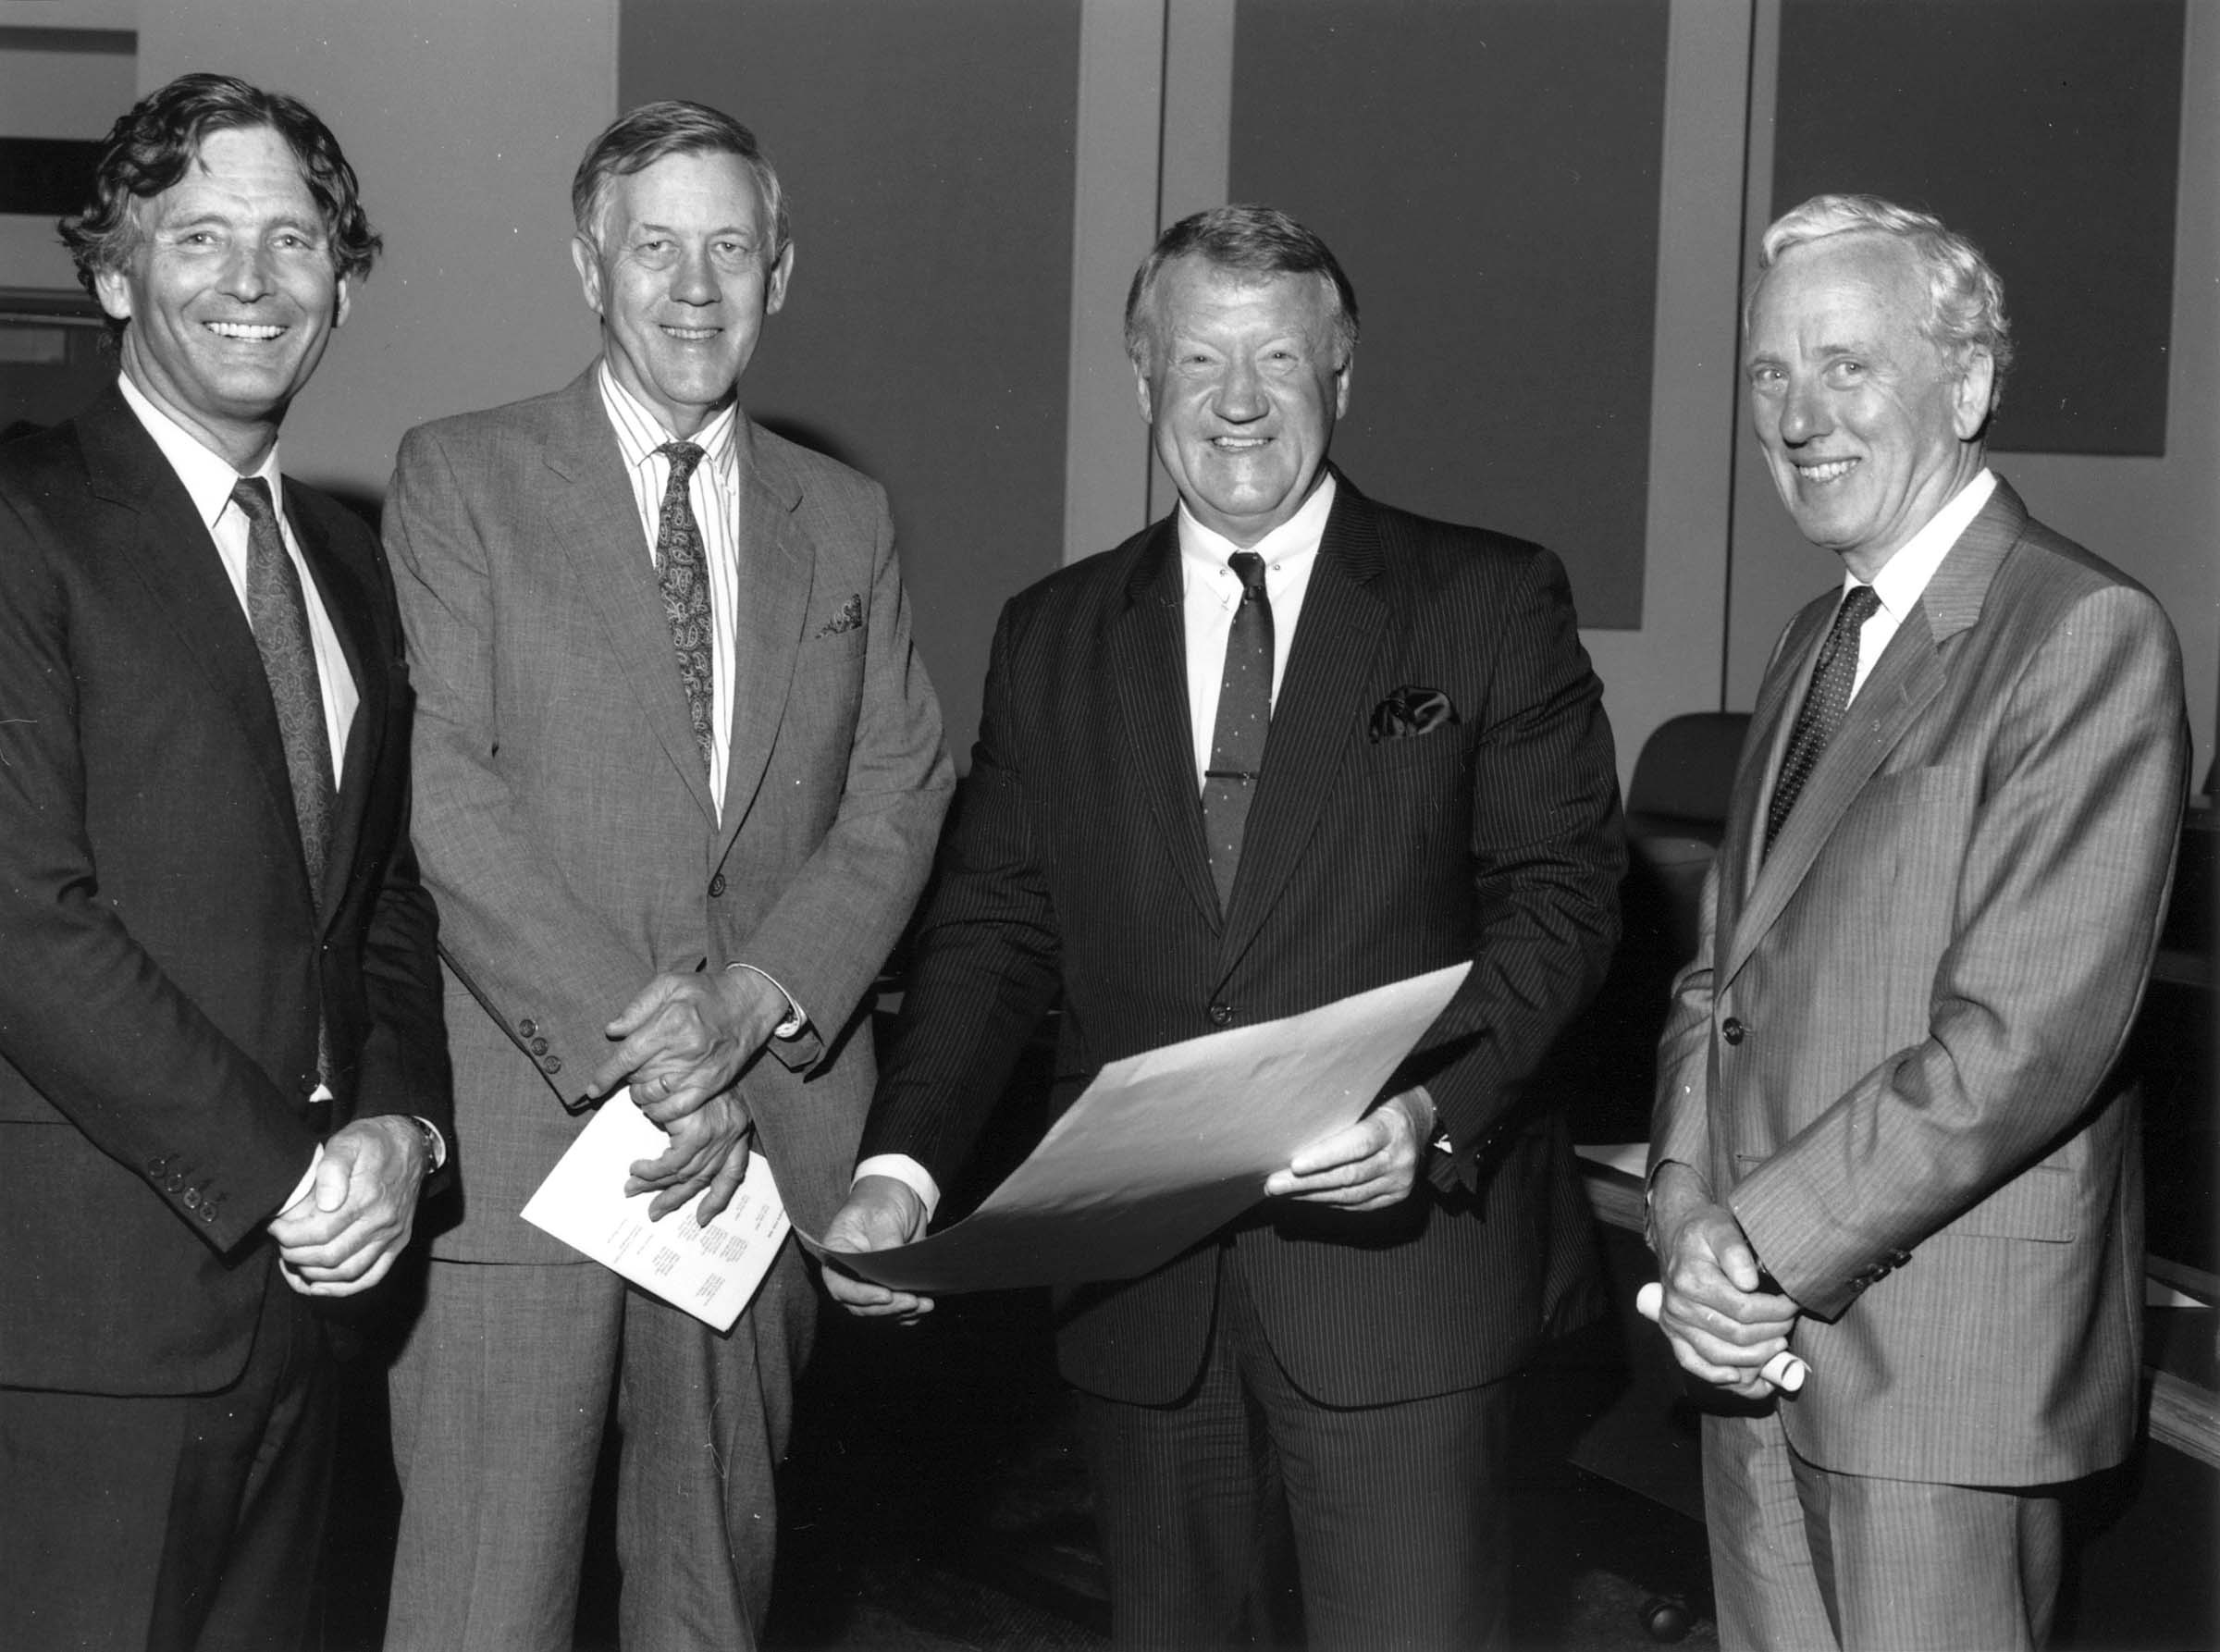 Professor John Rose, Sir Edward Woodward, N.R. (Nobby) Clark and Professor David Penington